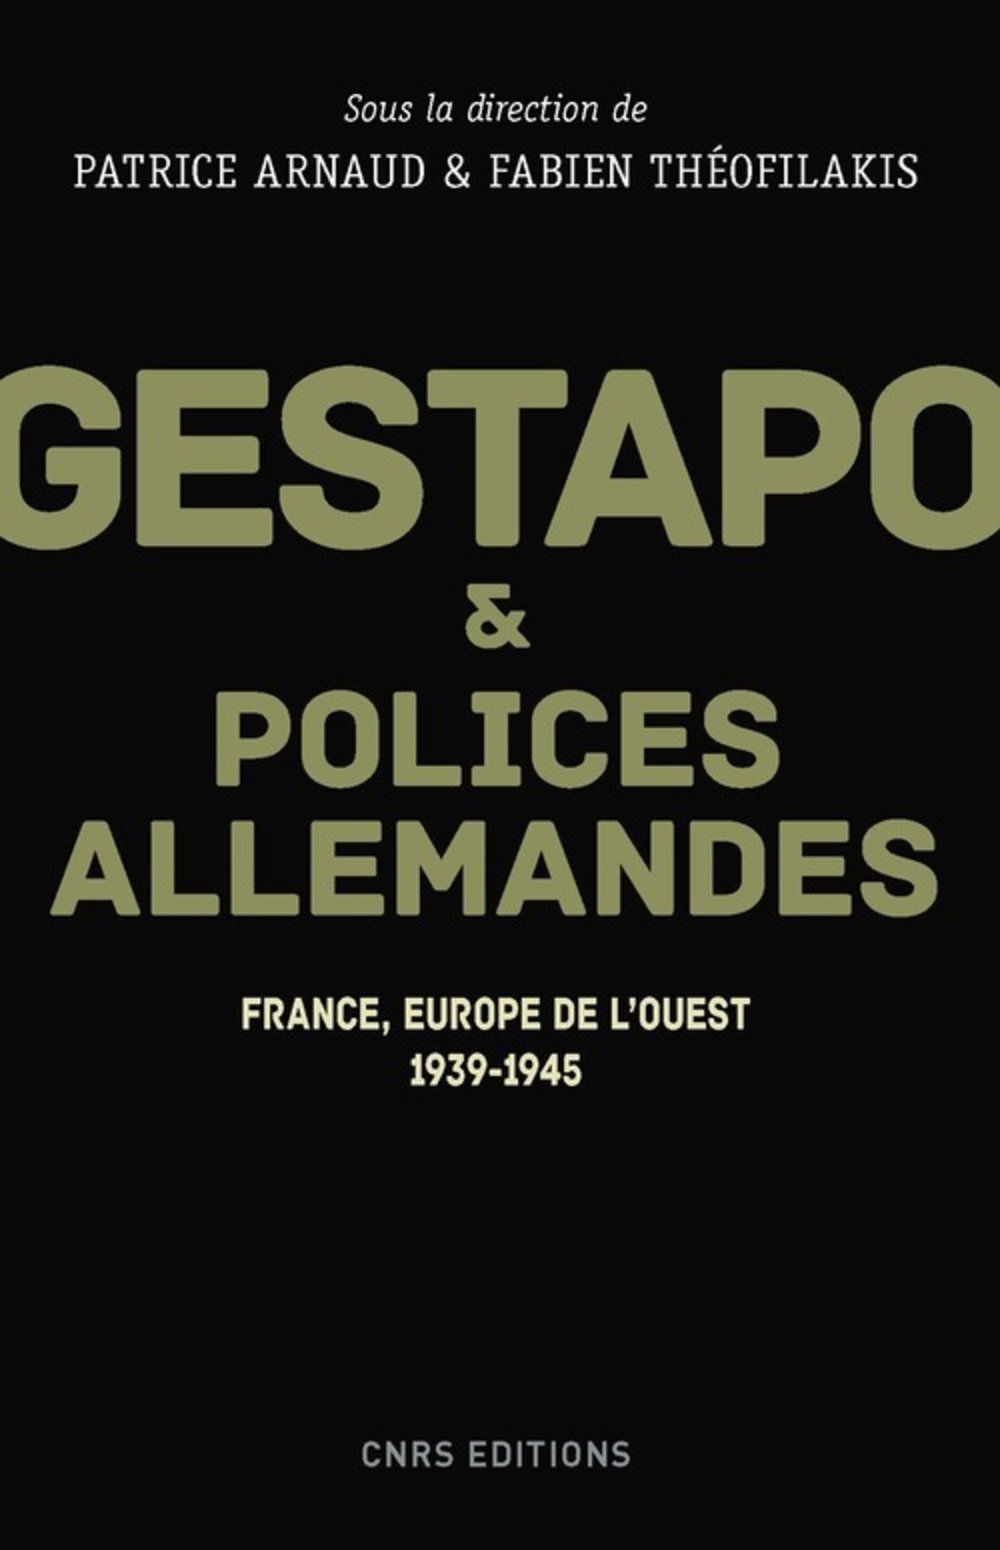 Gestapo et polices allemandes. Europe de l'Ouest, 1939-1945, 2017, 400 p.